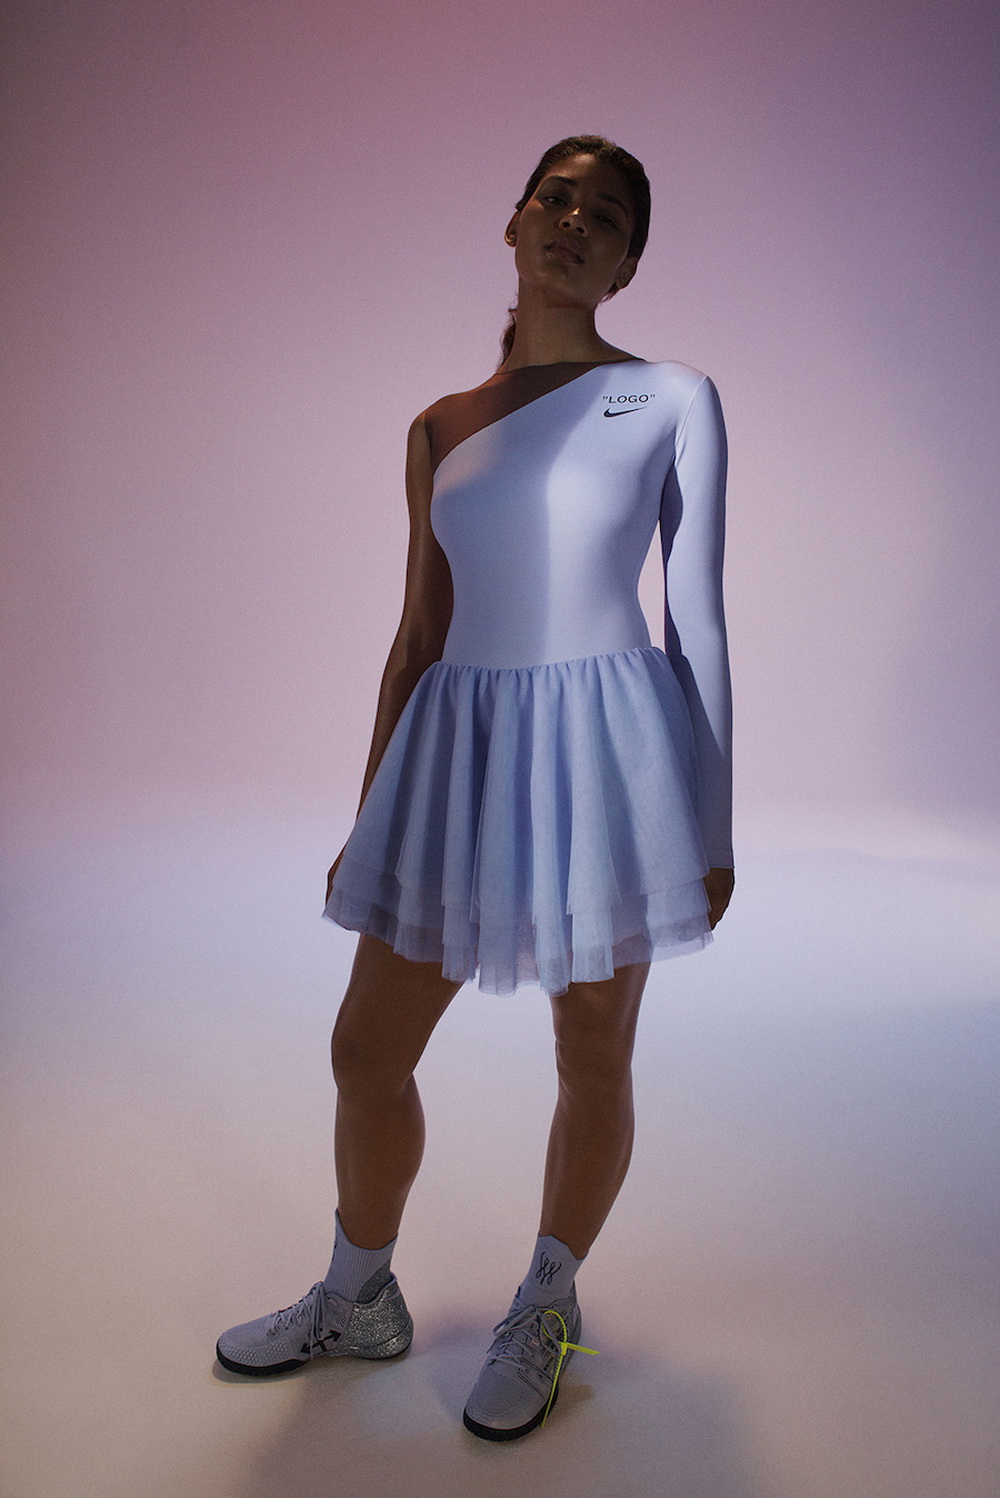 Ход королевы: неожиданная коллаборация Серены Уильямс, Nike и Off-White